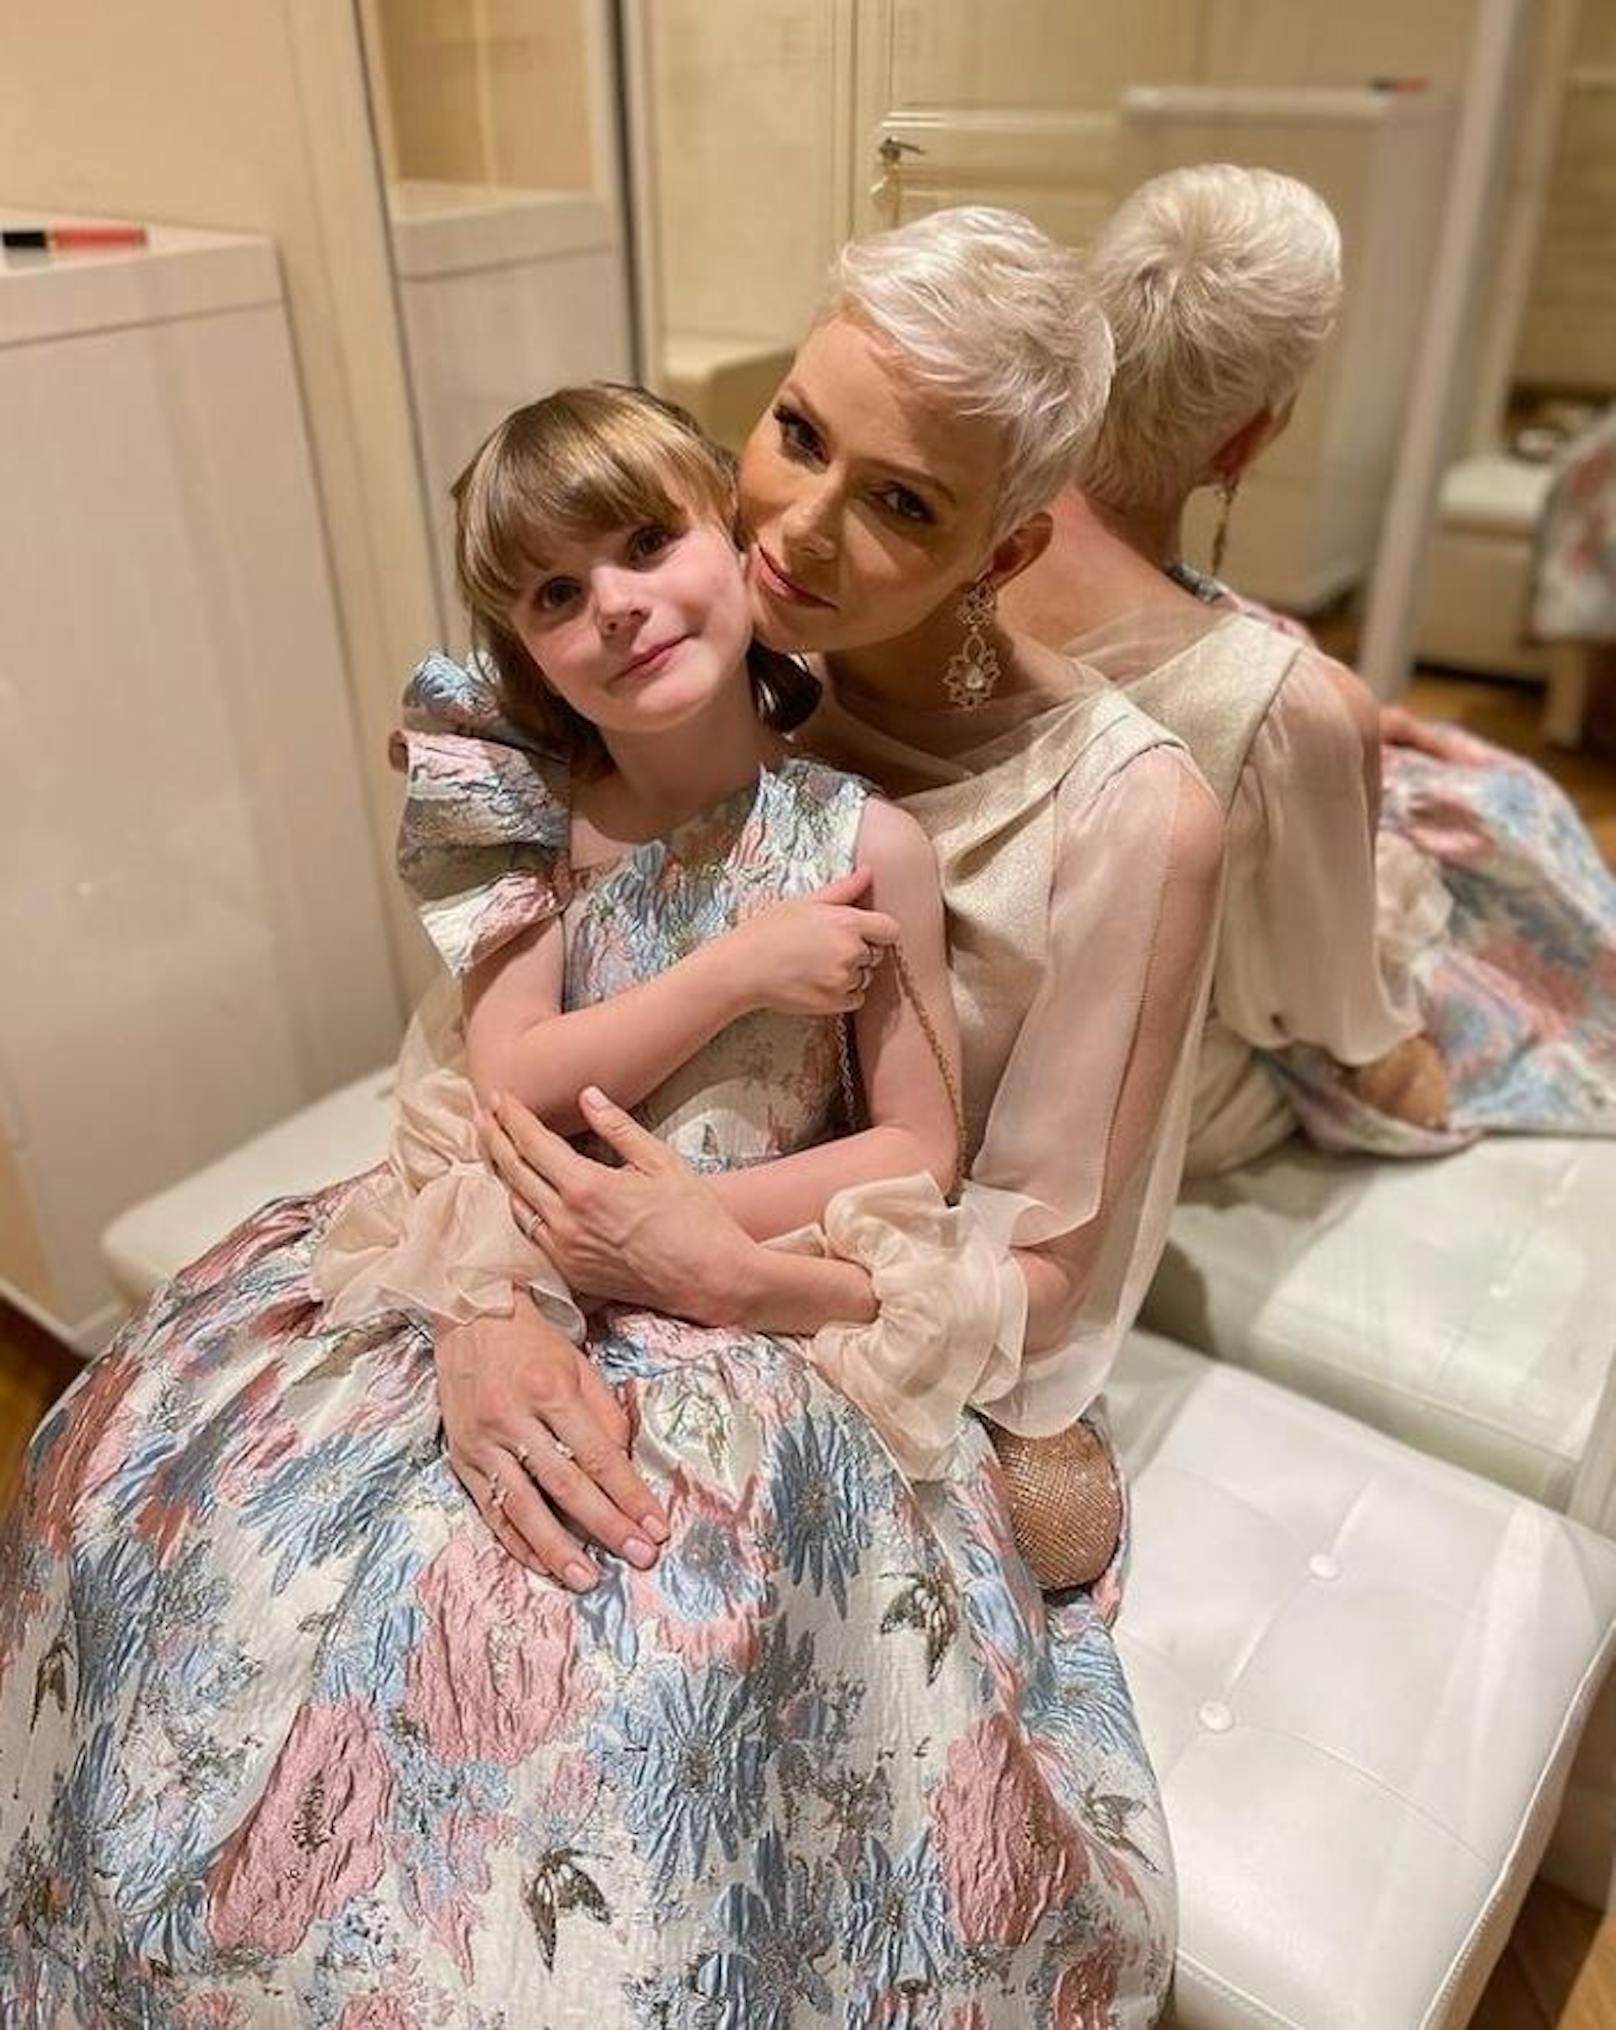 Charlène von Monaco mit ihrer Tochter Gabriella. Fans finden, dass die Fürstin sehr traurig aussieht.